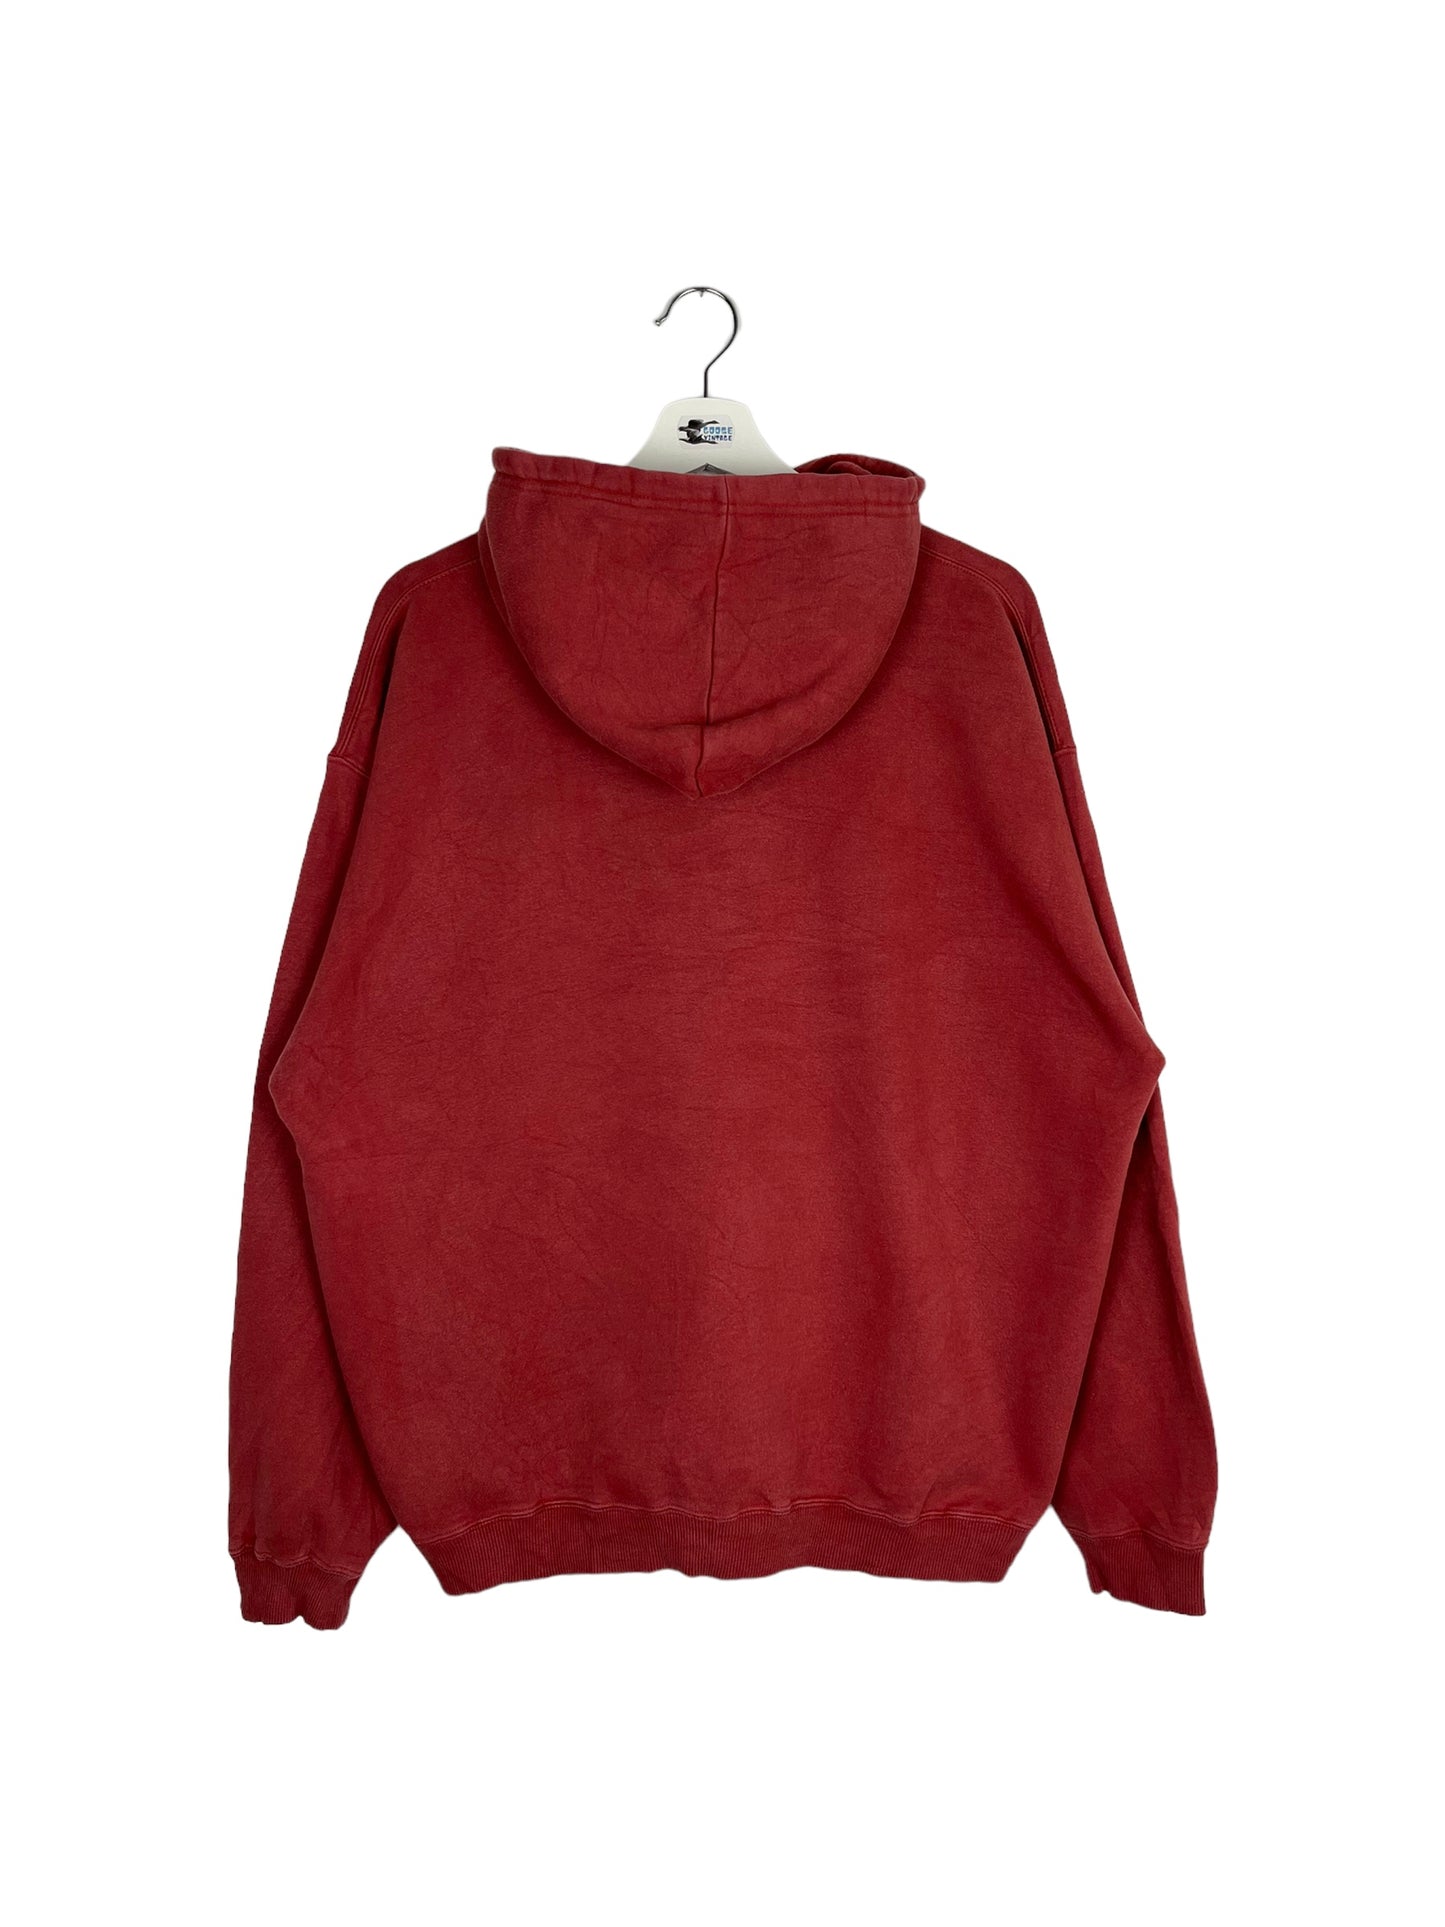 Vintage 90’s Wisconsin Blackwater Bay Hooded Sweatshirt - Large